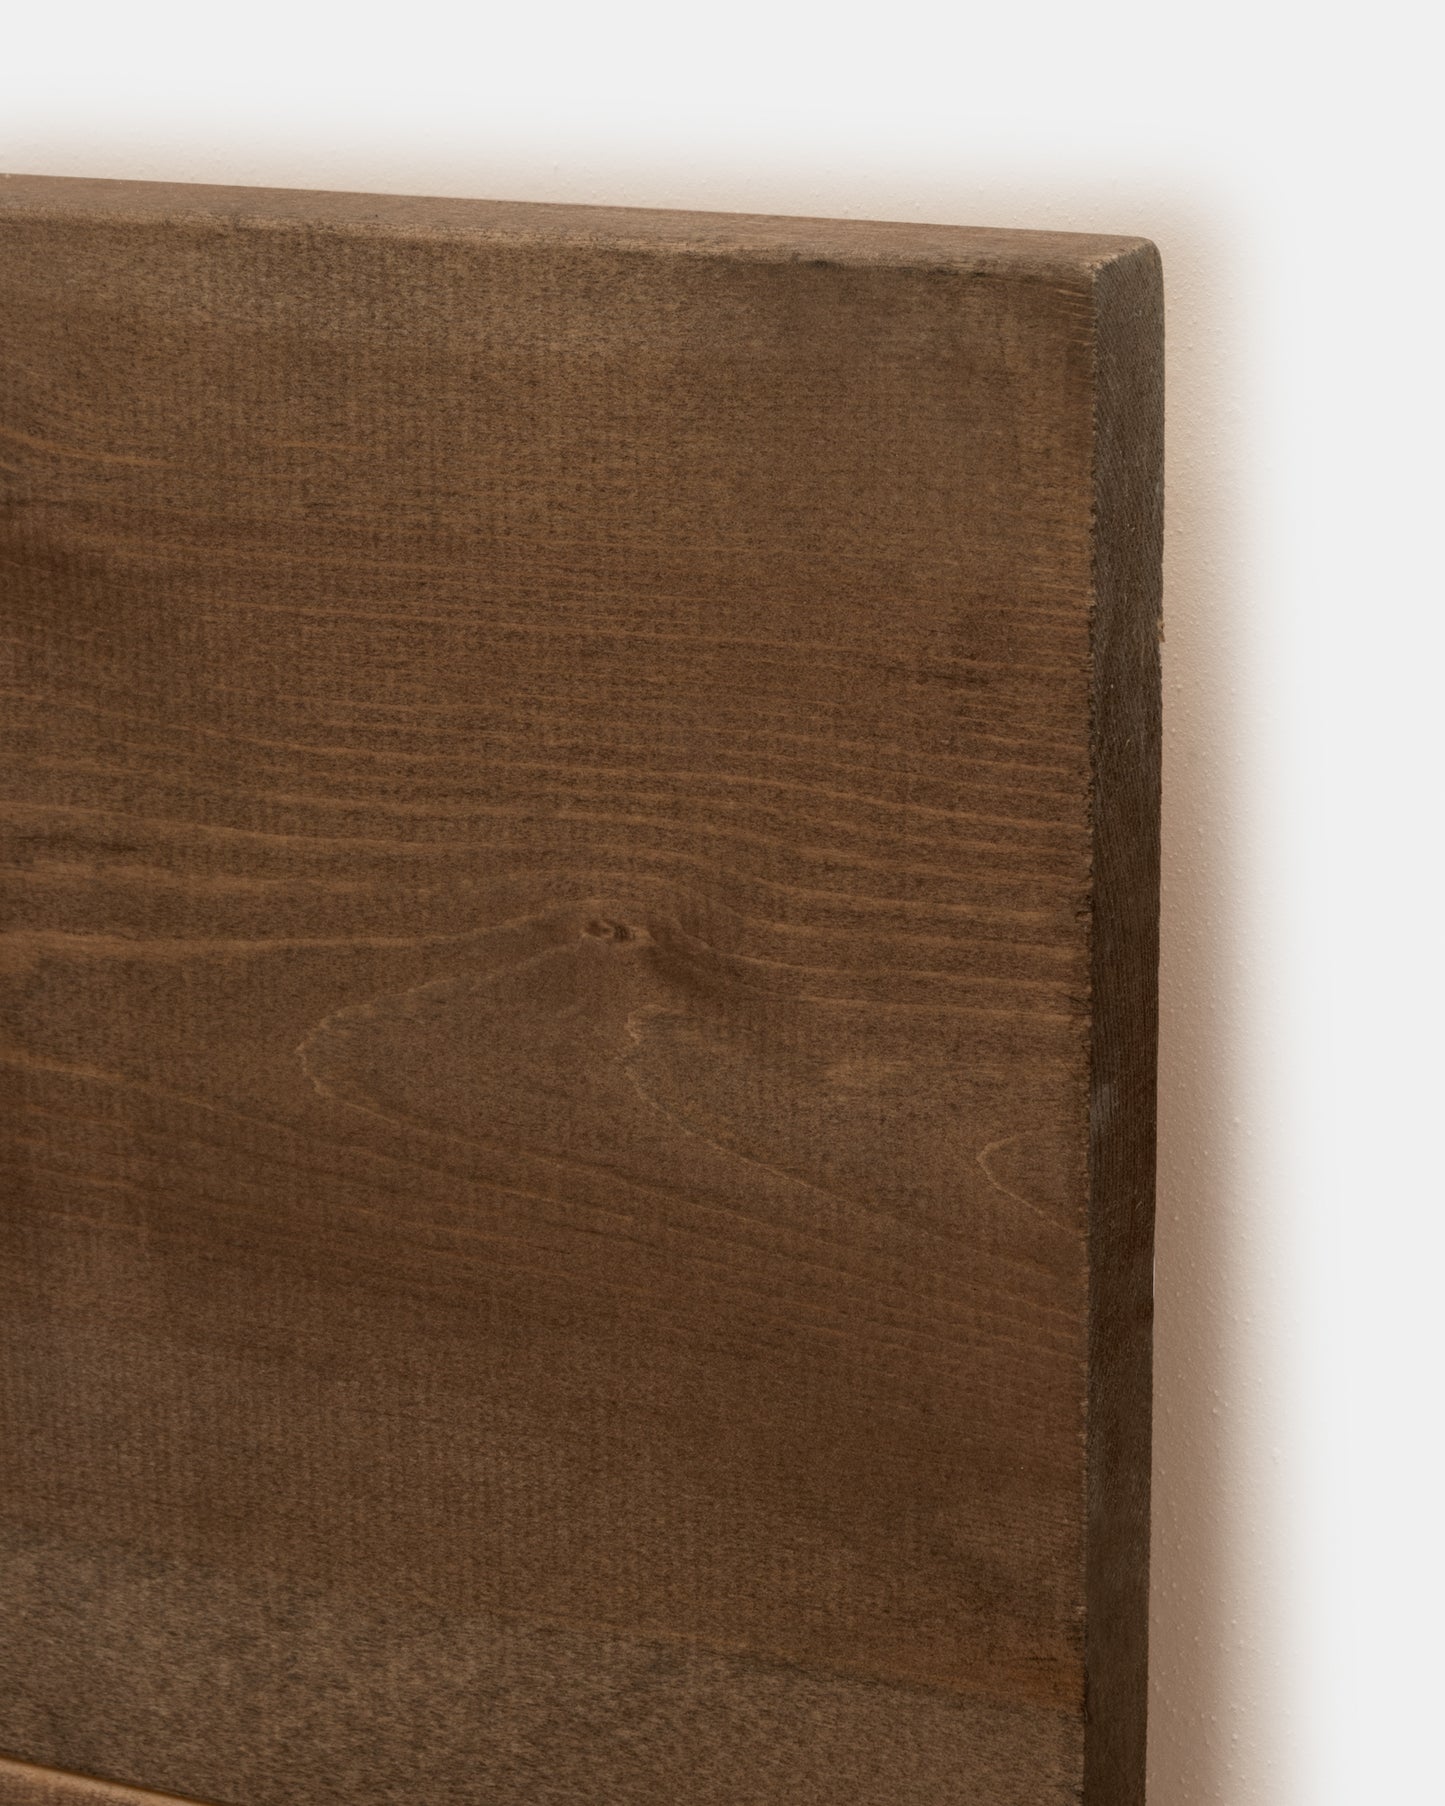 Cabecero de madera maciza en tono roble oscuro de 200x80cm - DECOWOOD